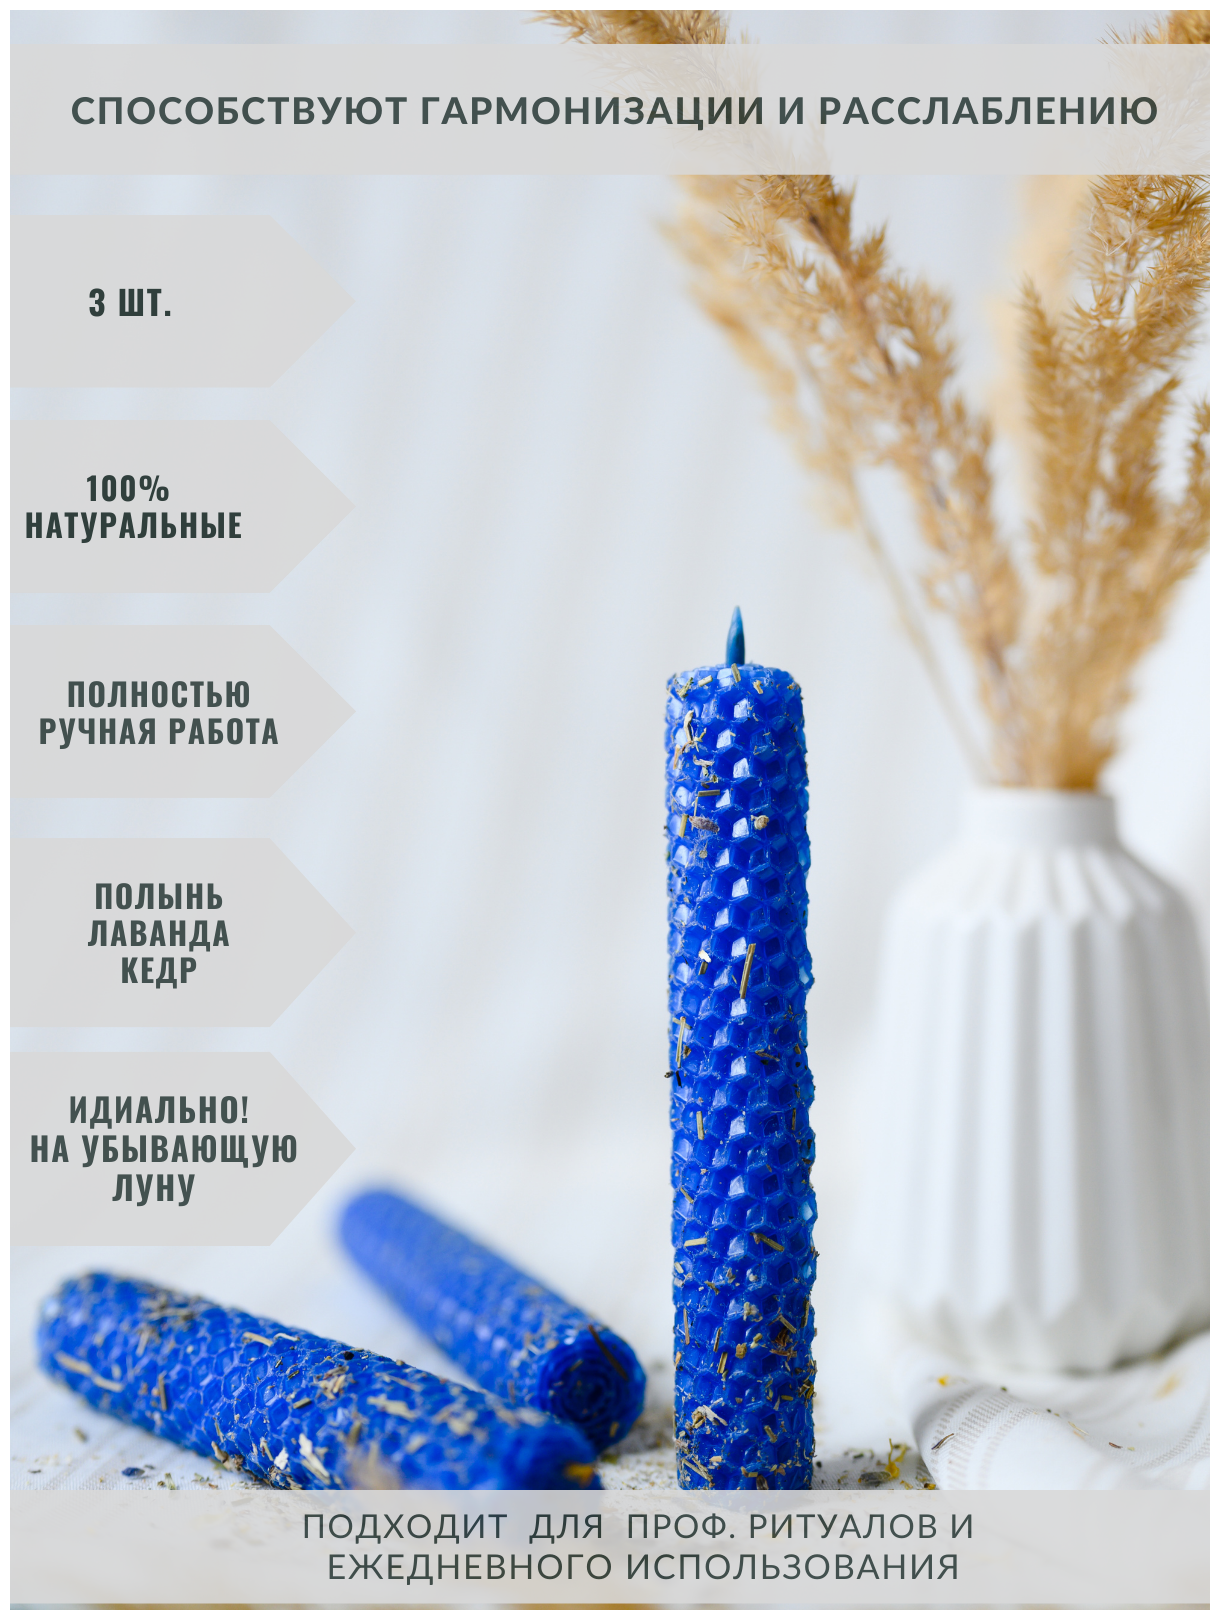 Синие свеча из вощины, пчелиный воск, травы "Гармония и Мир", ручная работа 3 шт.